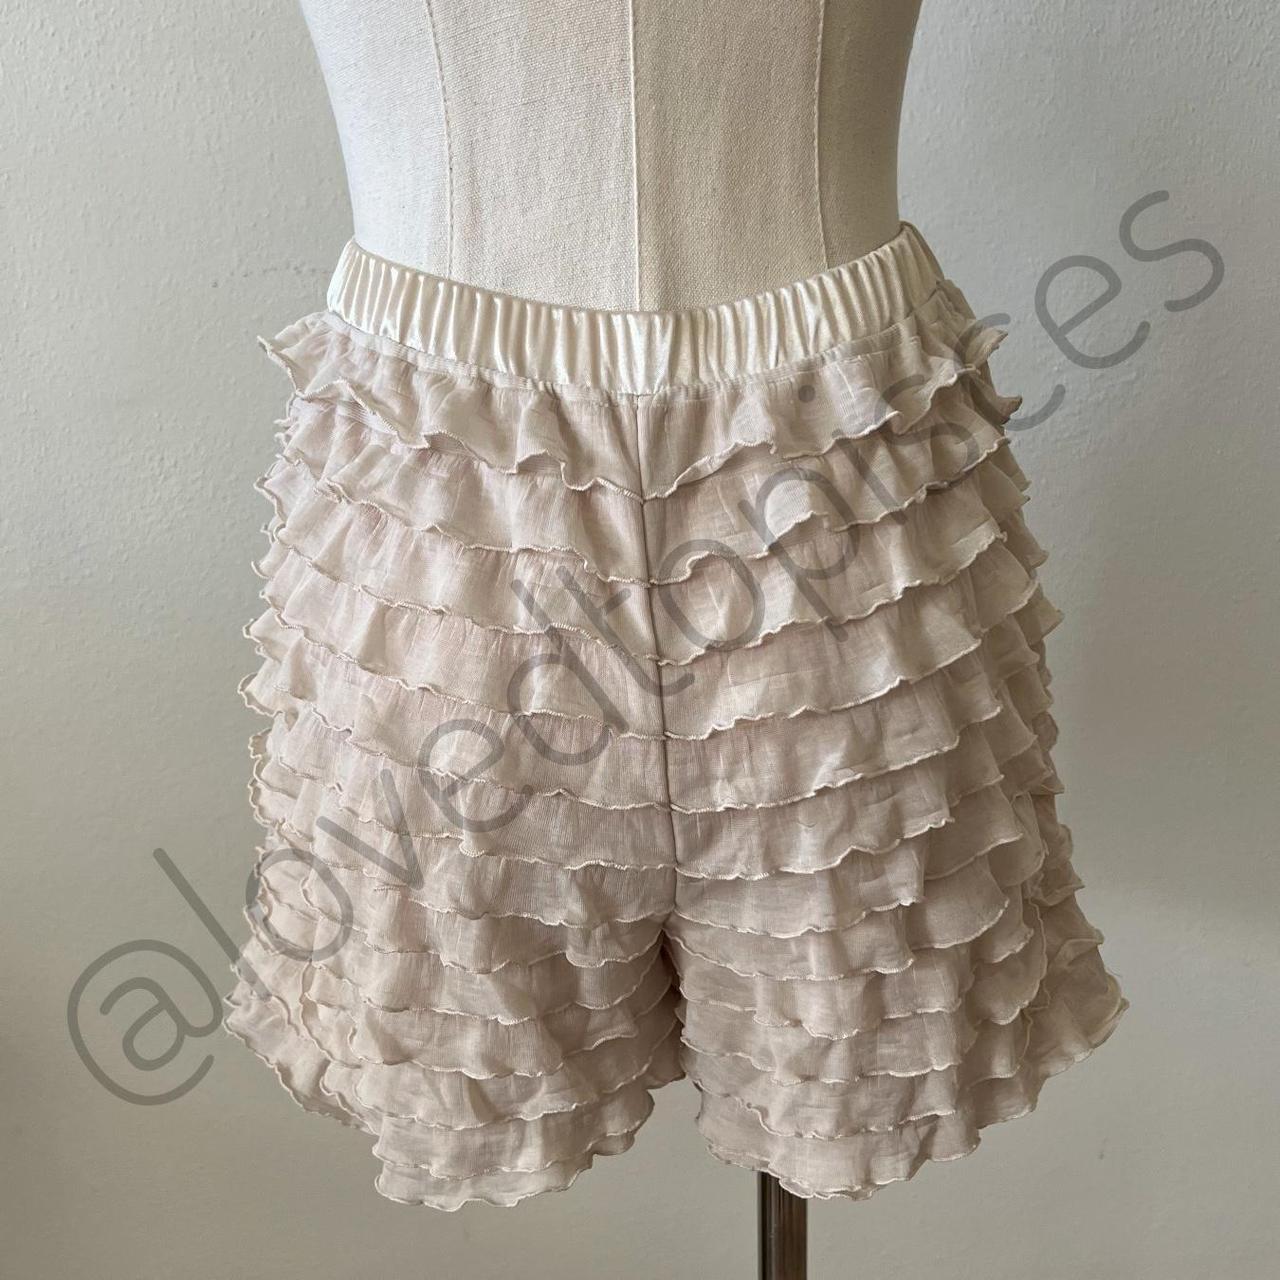 Vintage or Edwardian style ruffle bloomer shorts... - Depop